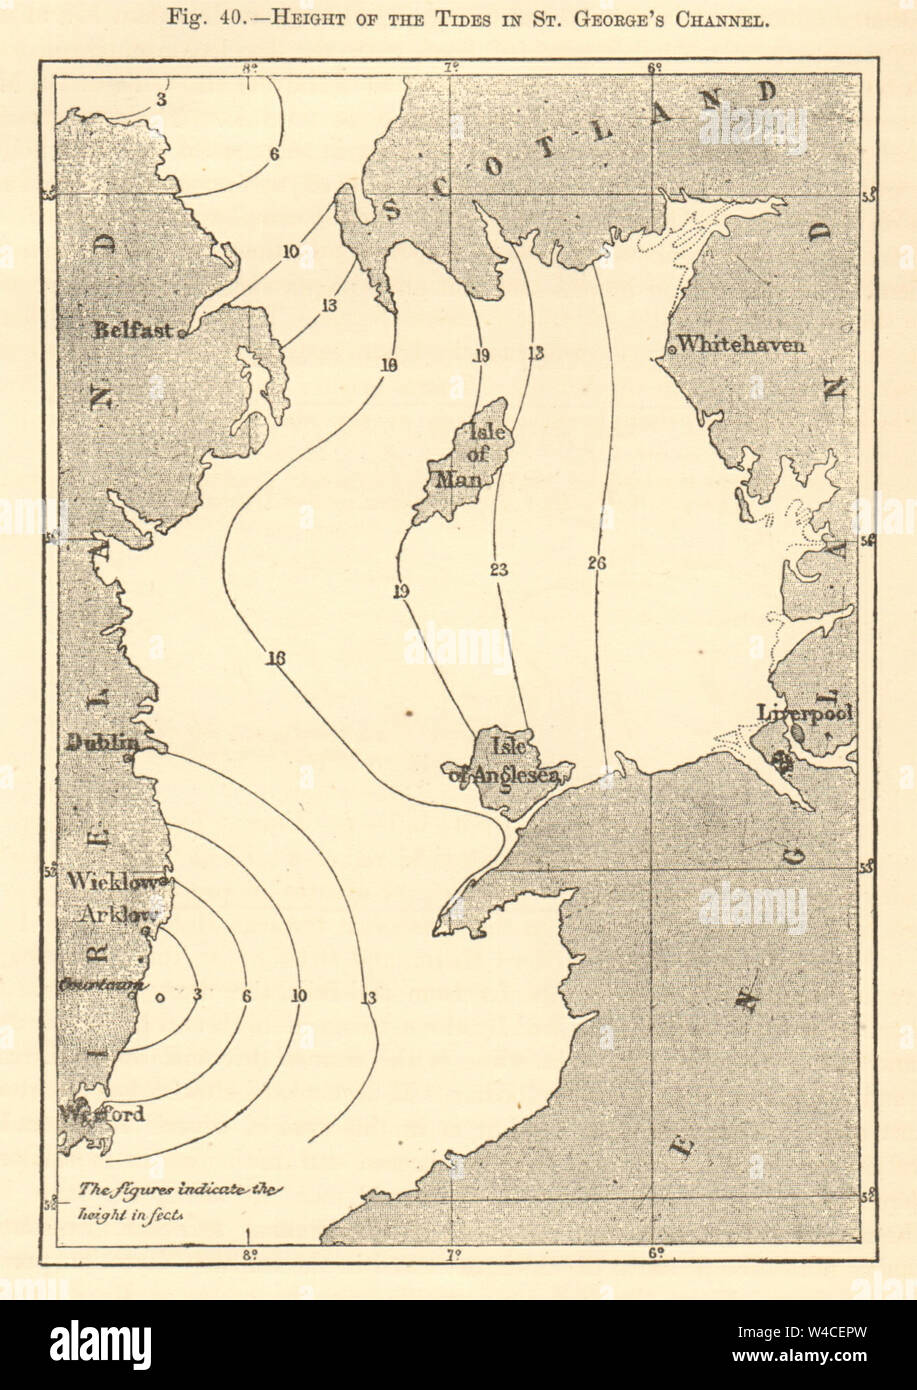 Höhe der Gezeiten in das St George's Channel. Irische See. Kartenskizze 1886 Stockfoto